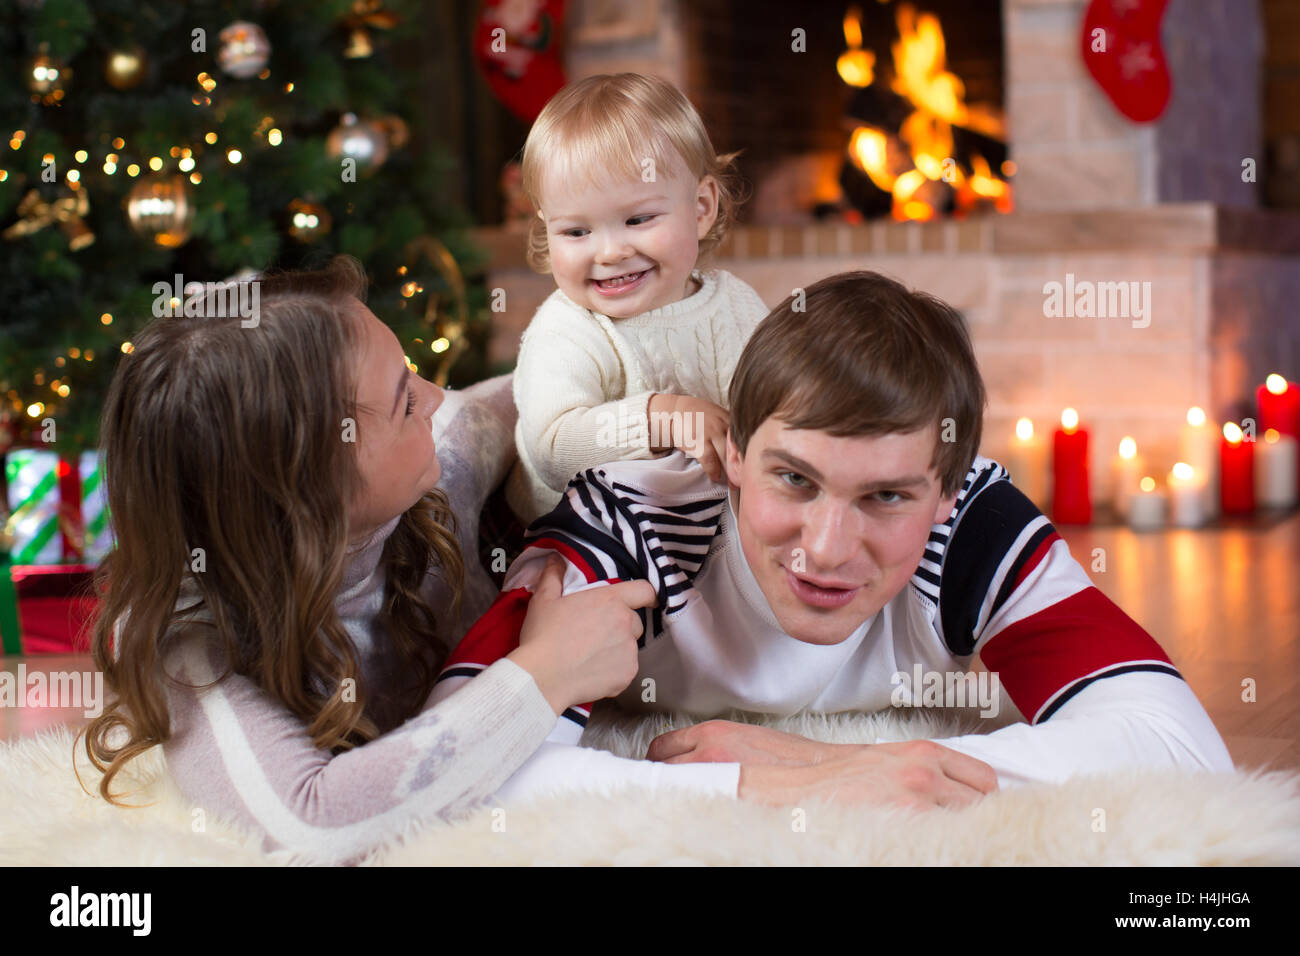 Weihnachten, Weihnachten, Familie, Menschen, Glück Konzept - glückliche Eltern mit hübschen Baby spielen Stockfoto